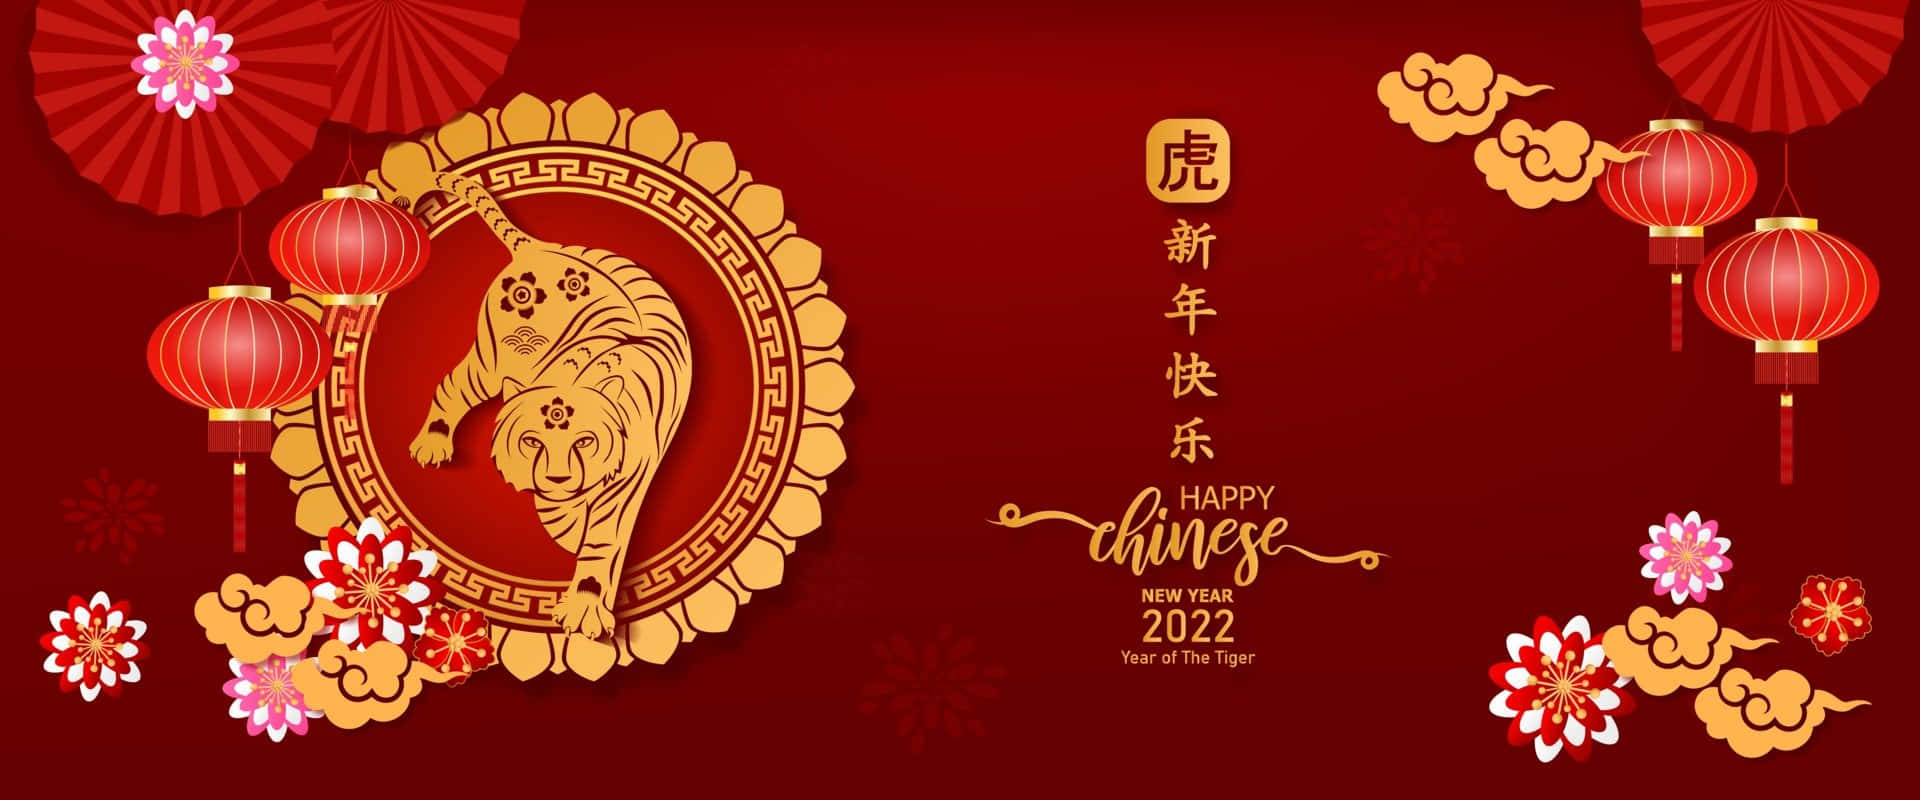 Fotos Do Ano Novo Chinês 2022